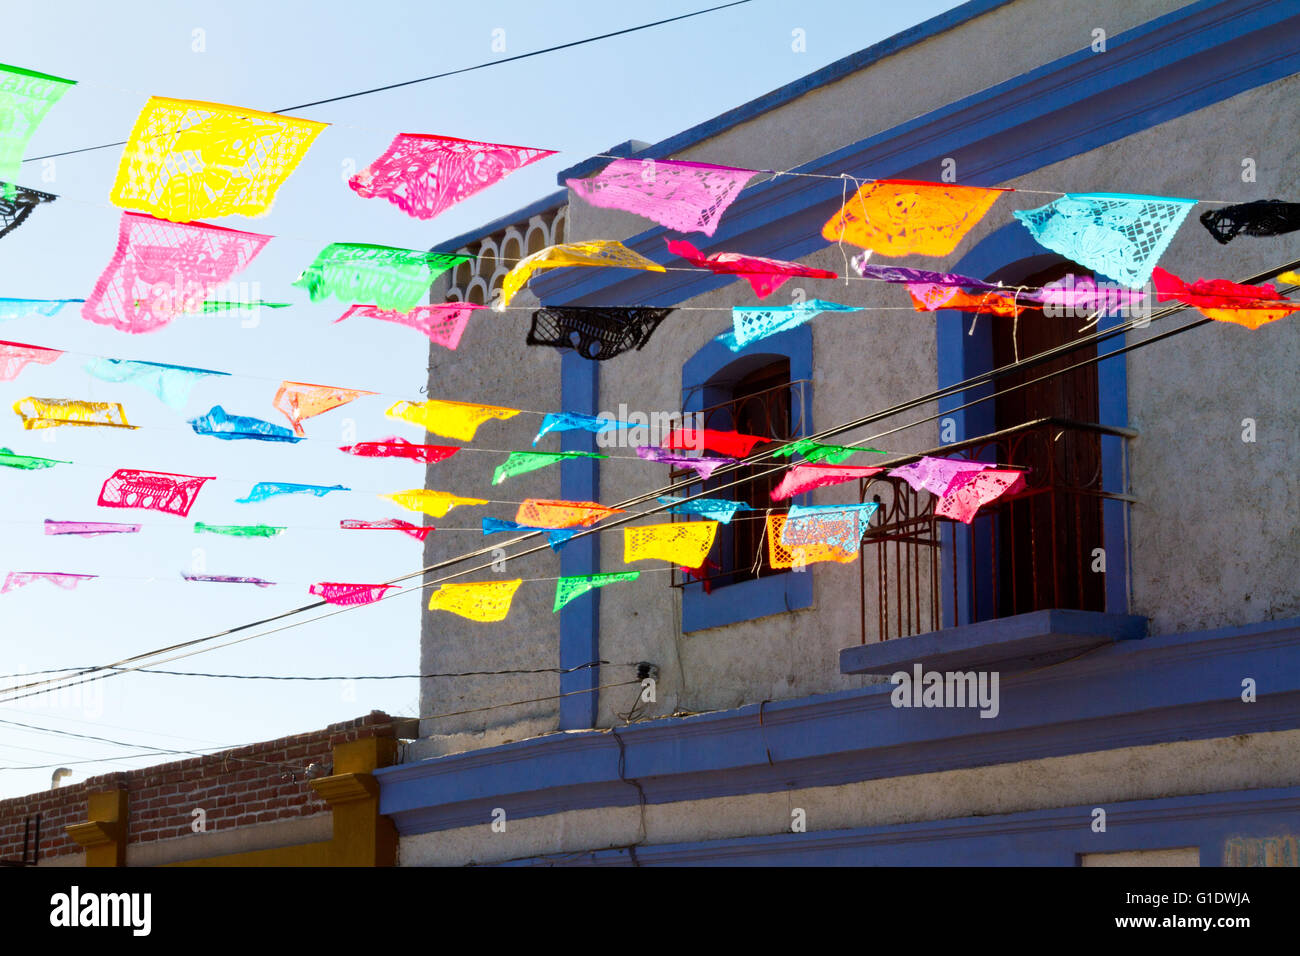 Papel picados, Mexican paper flags, announce a festival in Todos Santos, Baja Sur, Mexico. Stock Photo